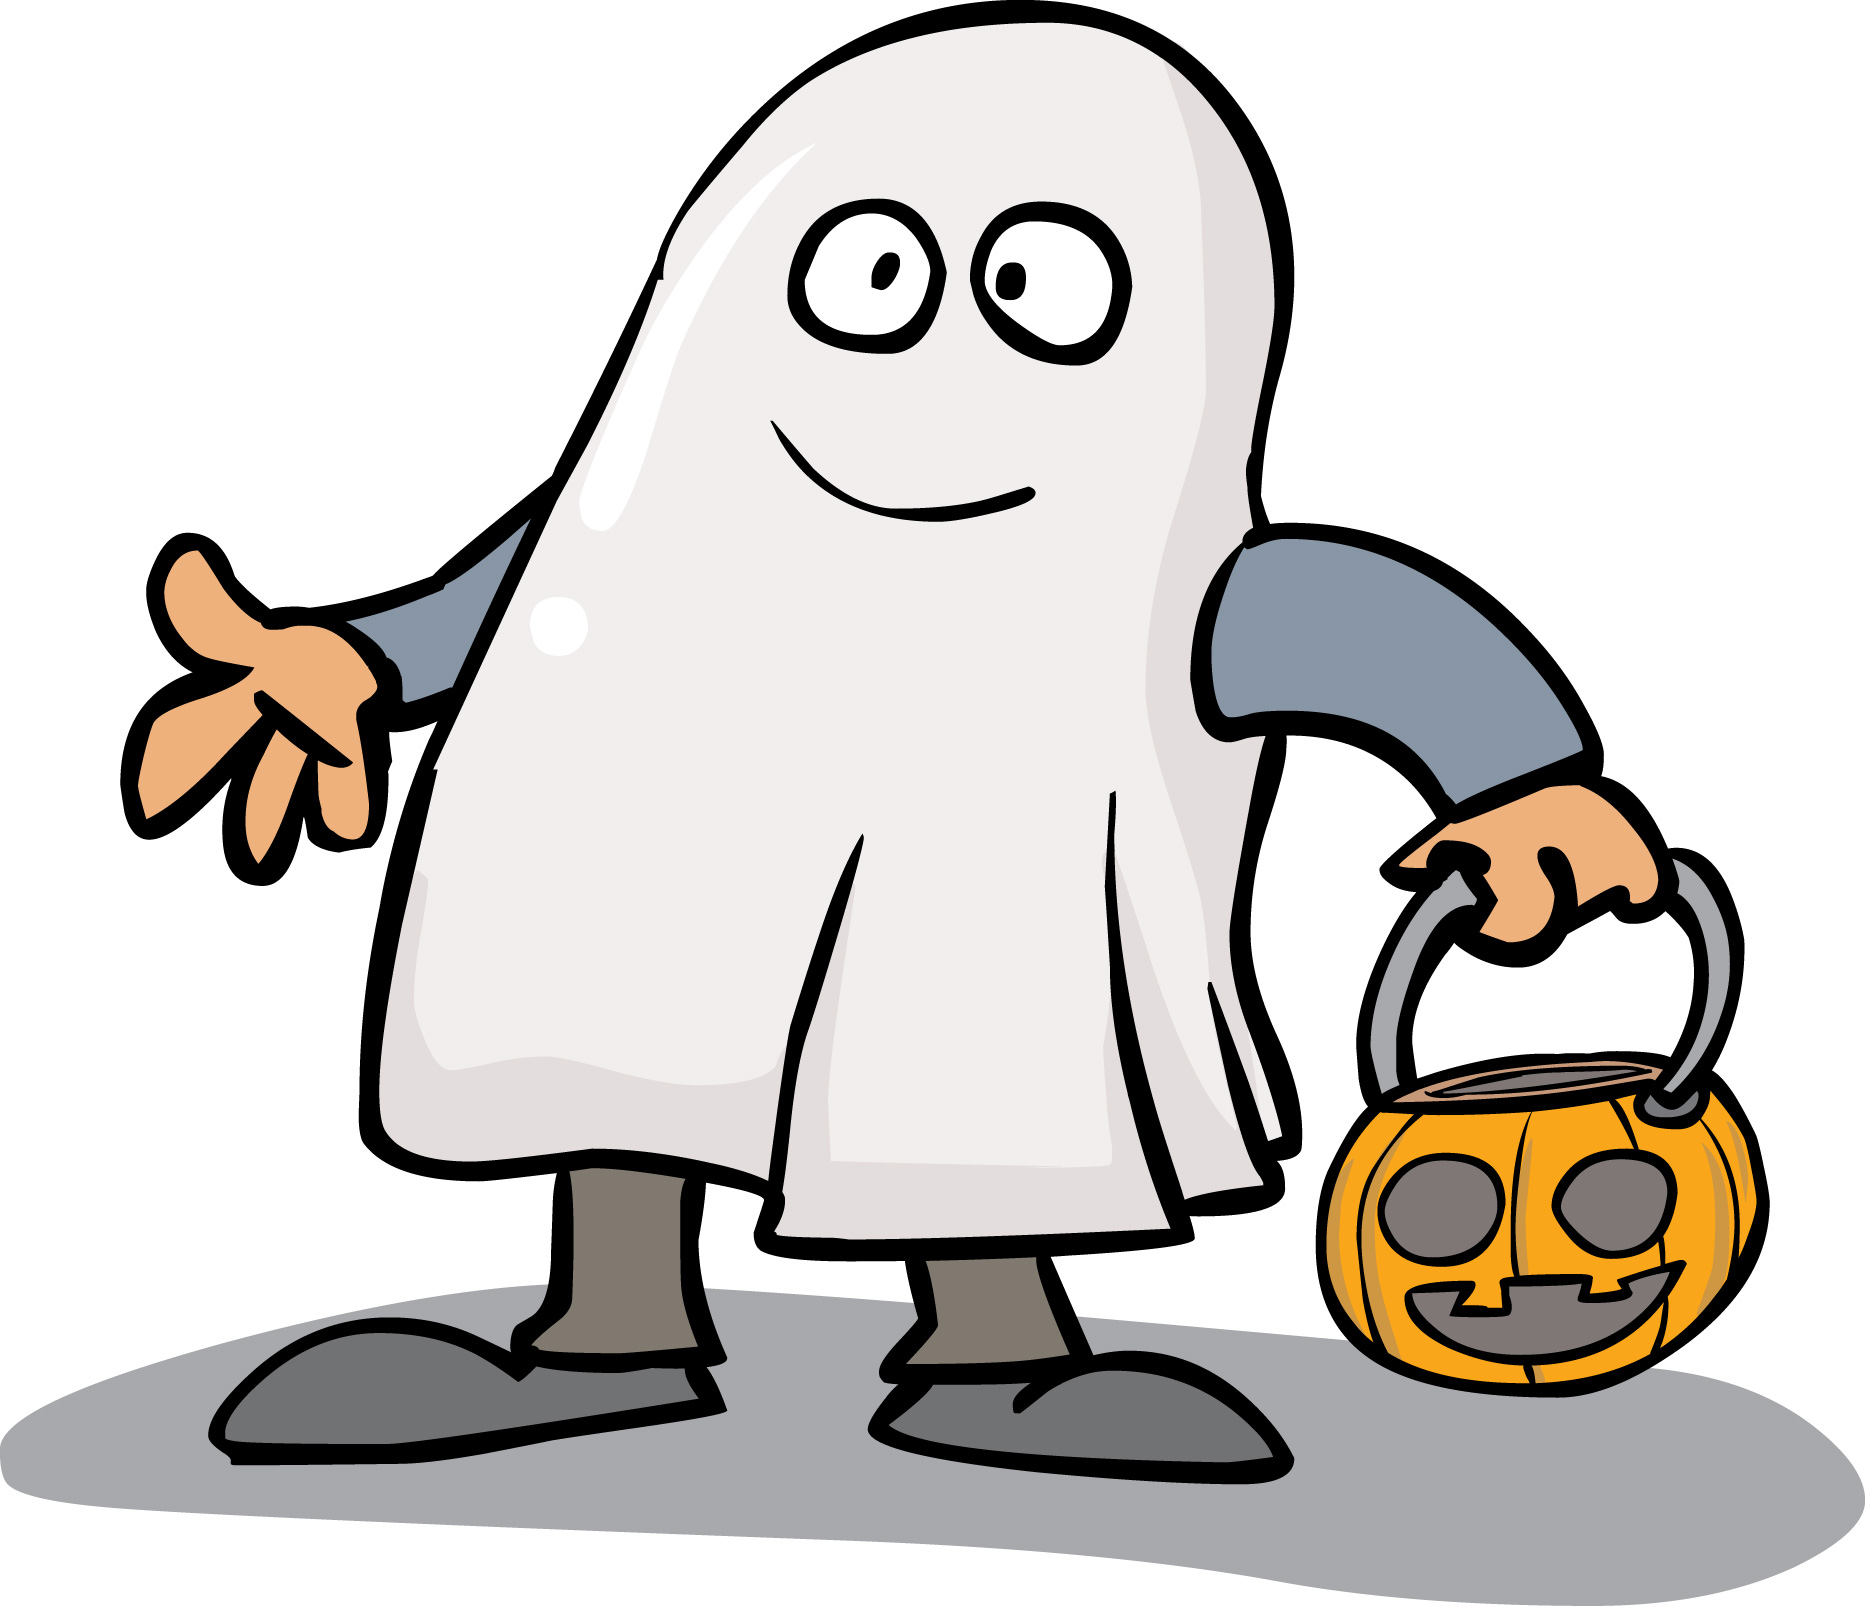 Halloween Costumes Clipart - Halloween Costume Clip Art